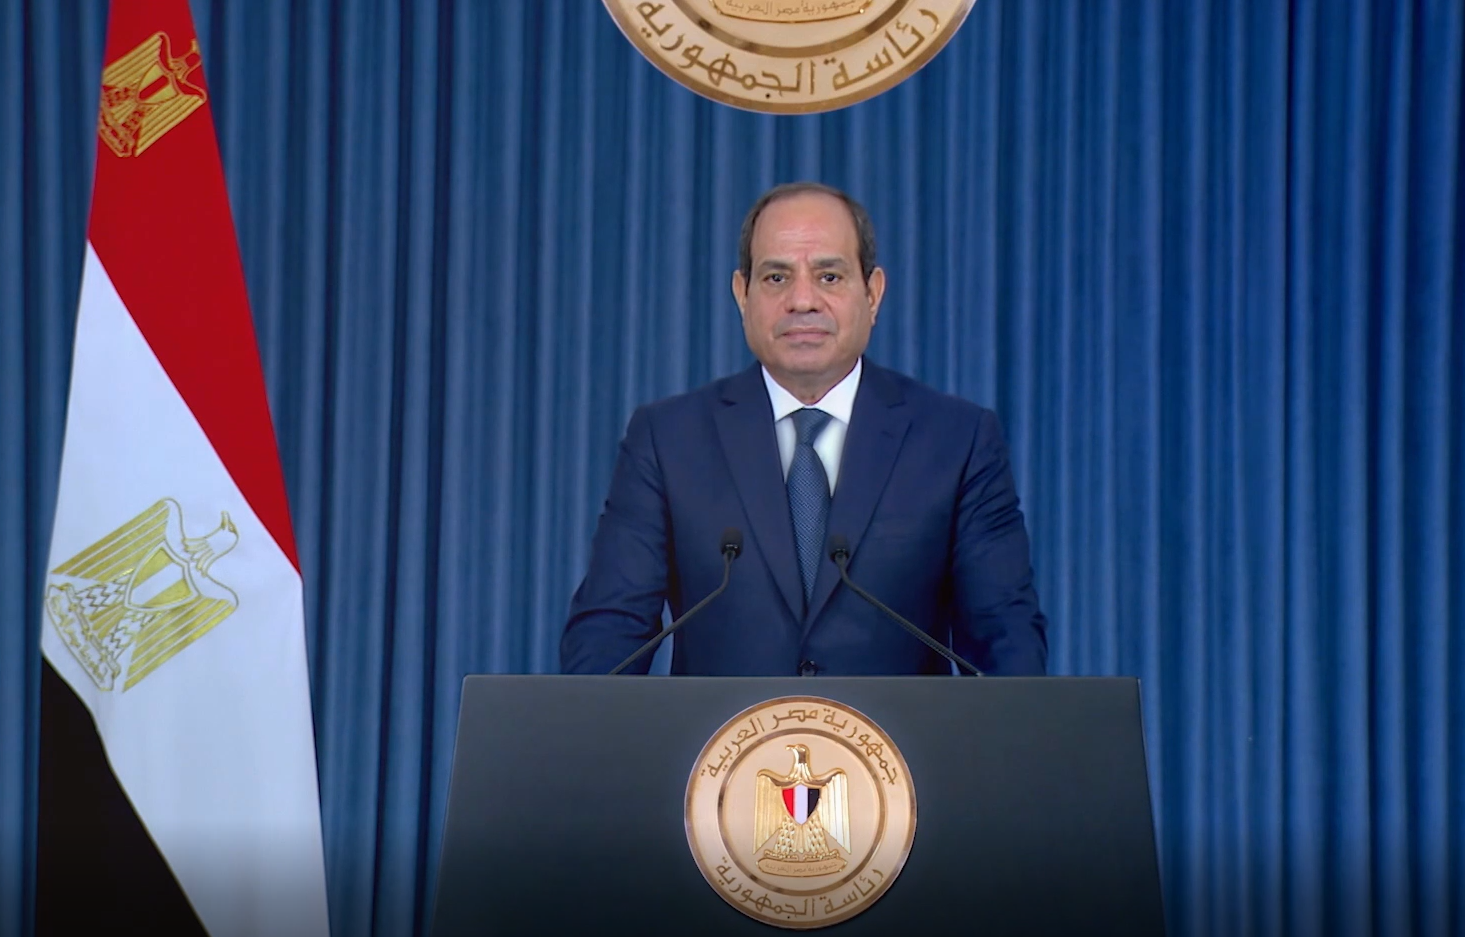 السيسي يترشح لرئاسة مصر مجدداً وسط تحديات اقتصادية - اقتصاد الشرق مع بلومبرغ